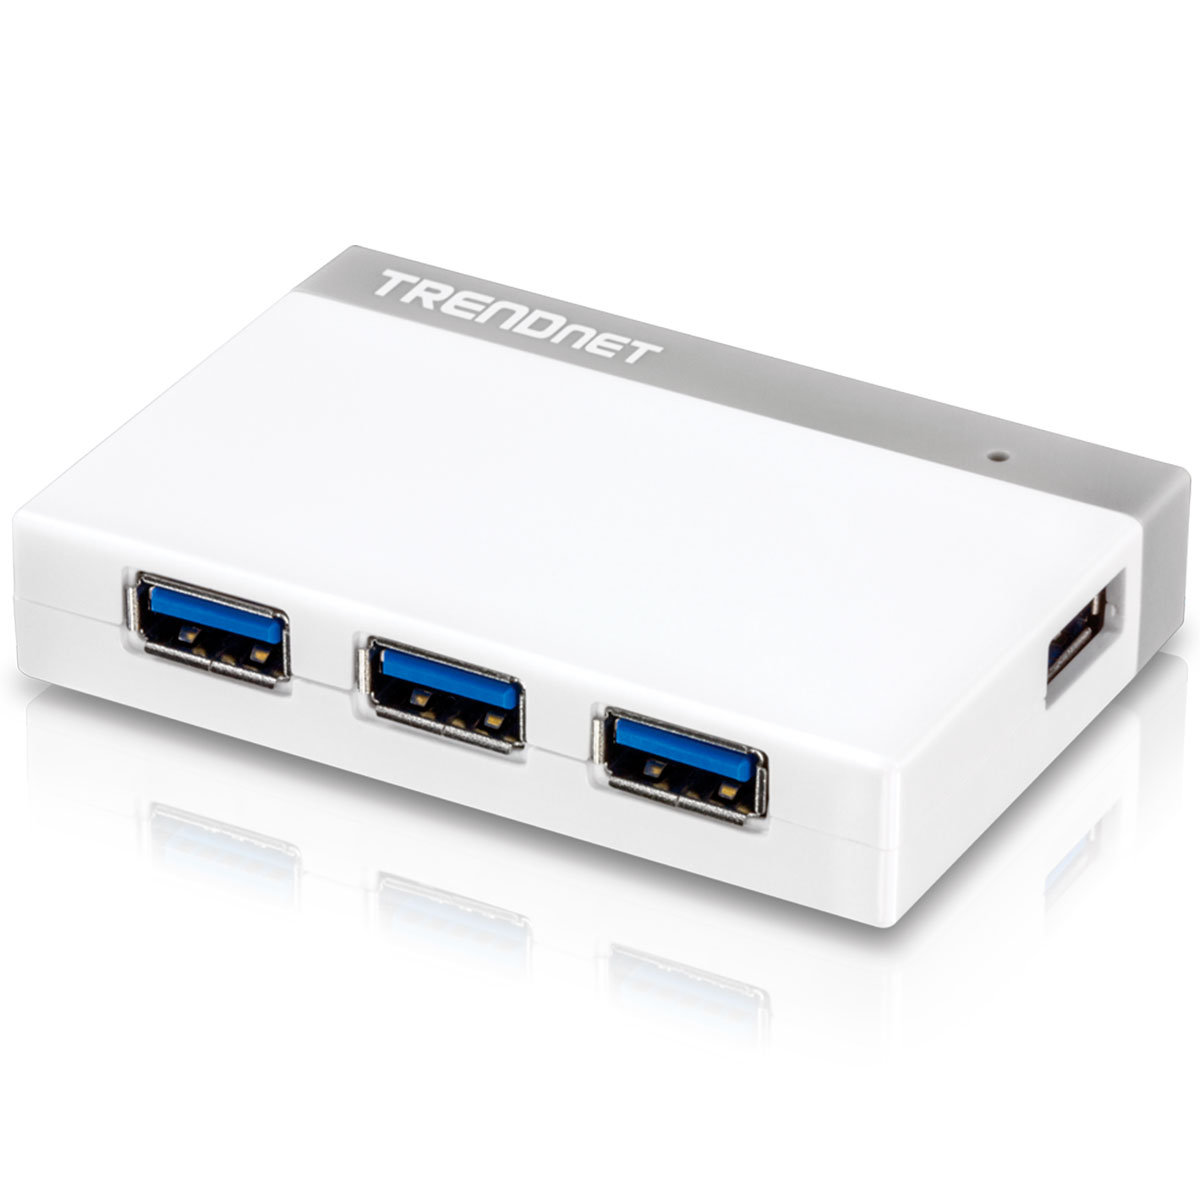 HUB USB 3.0 - 4 Portas - TrendNet TU3-H4